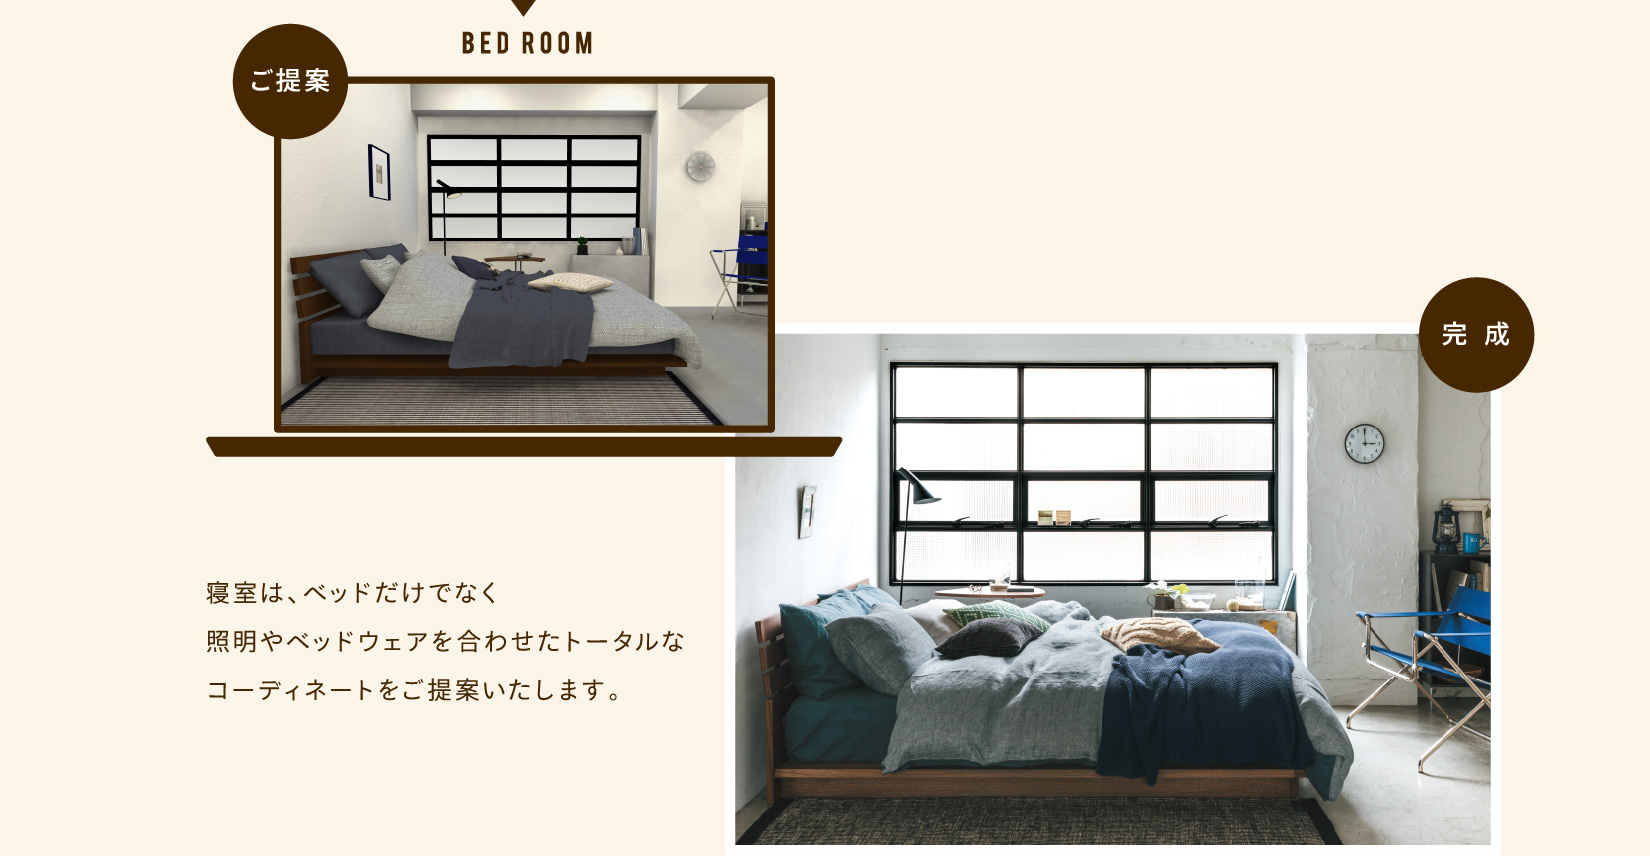 寝室は、ベッドだけでなく照明やベッドウェアを合わせたトータルなコーディネイトをご提案いたします。